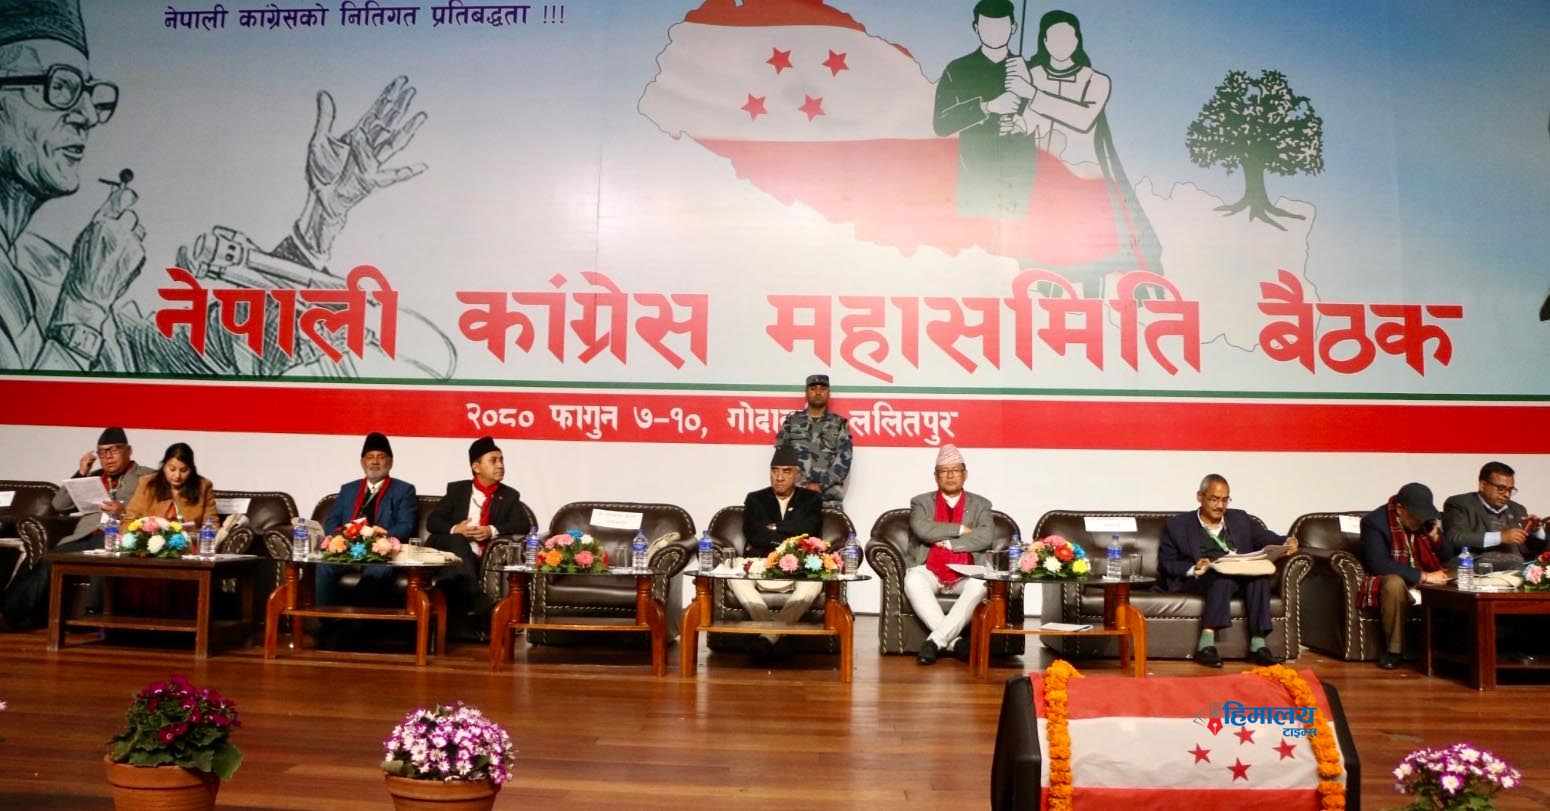 NC Mahasamiti Meeting: Over 1,000 Members Sign Proposal For Hindu State